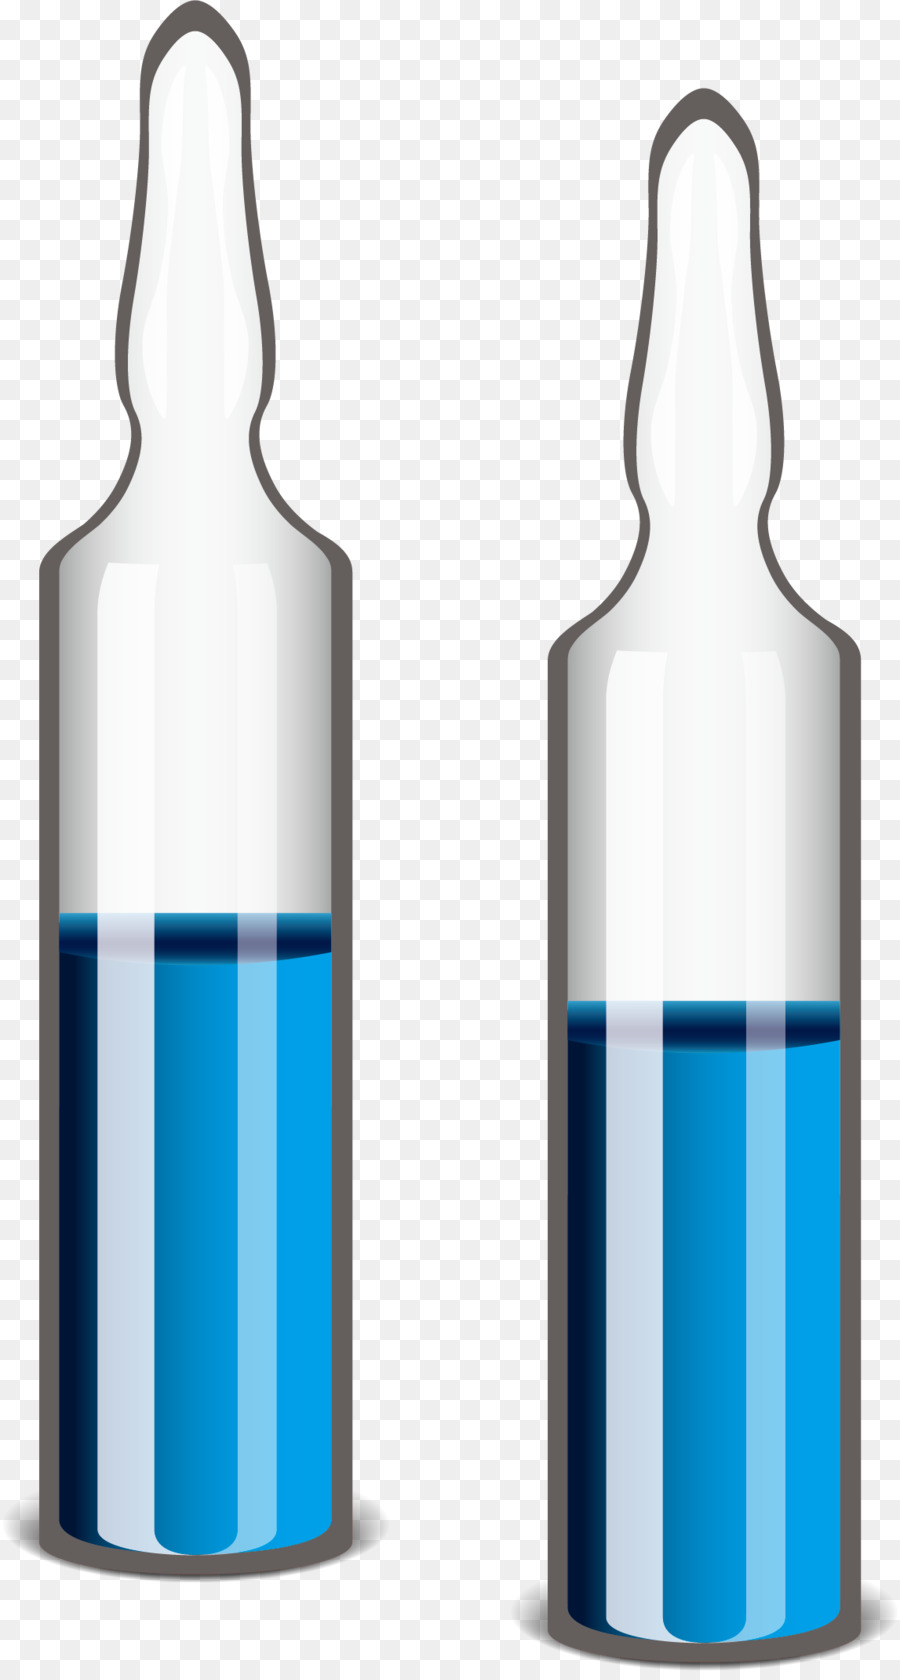 Glass bottle Pharmaceutical drug Medicine - Potion Bottle png download - 1147*2130 - Free Transparent Glass Bottle png Download.